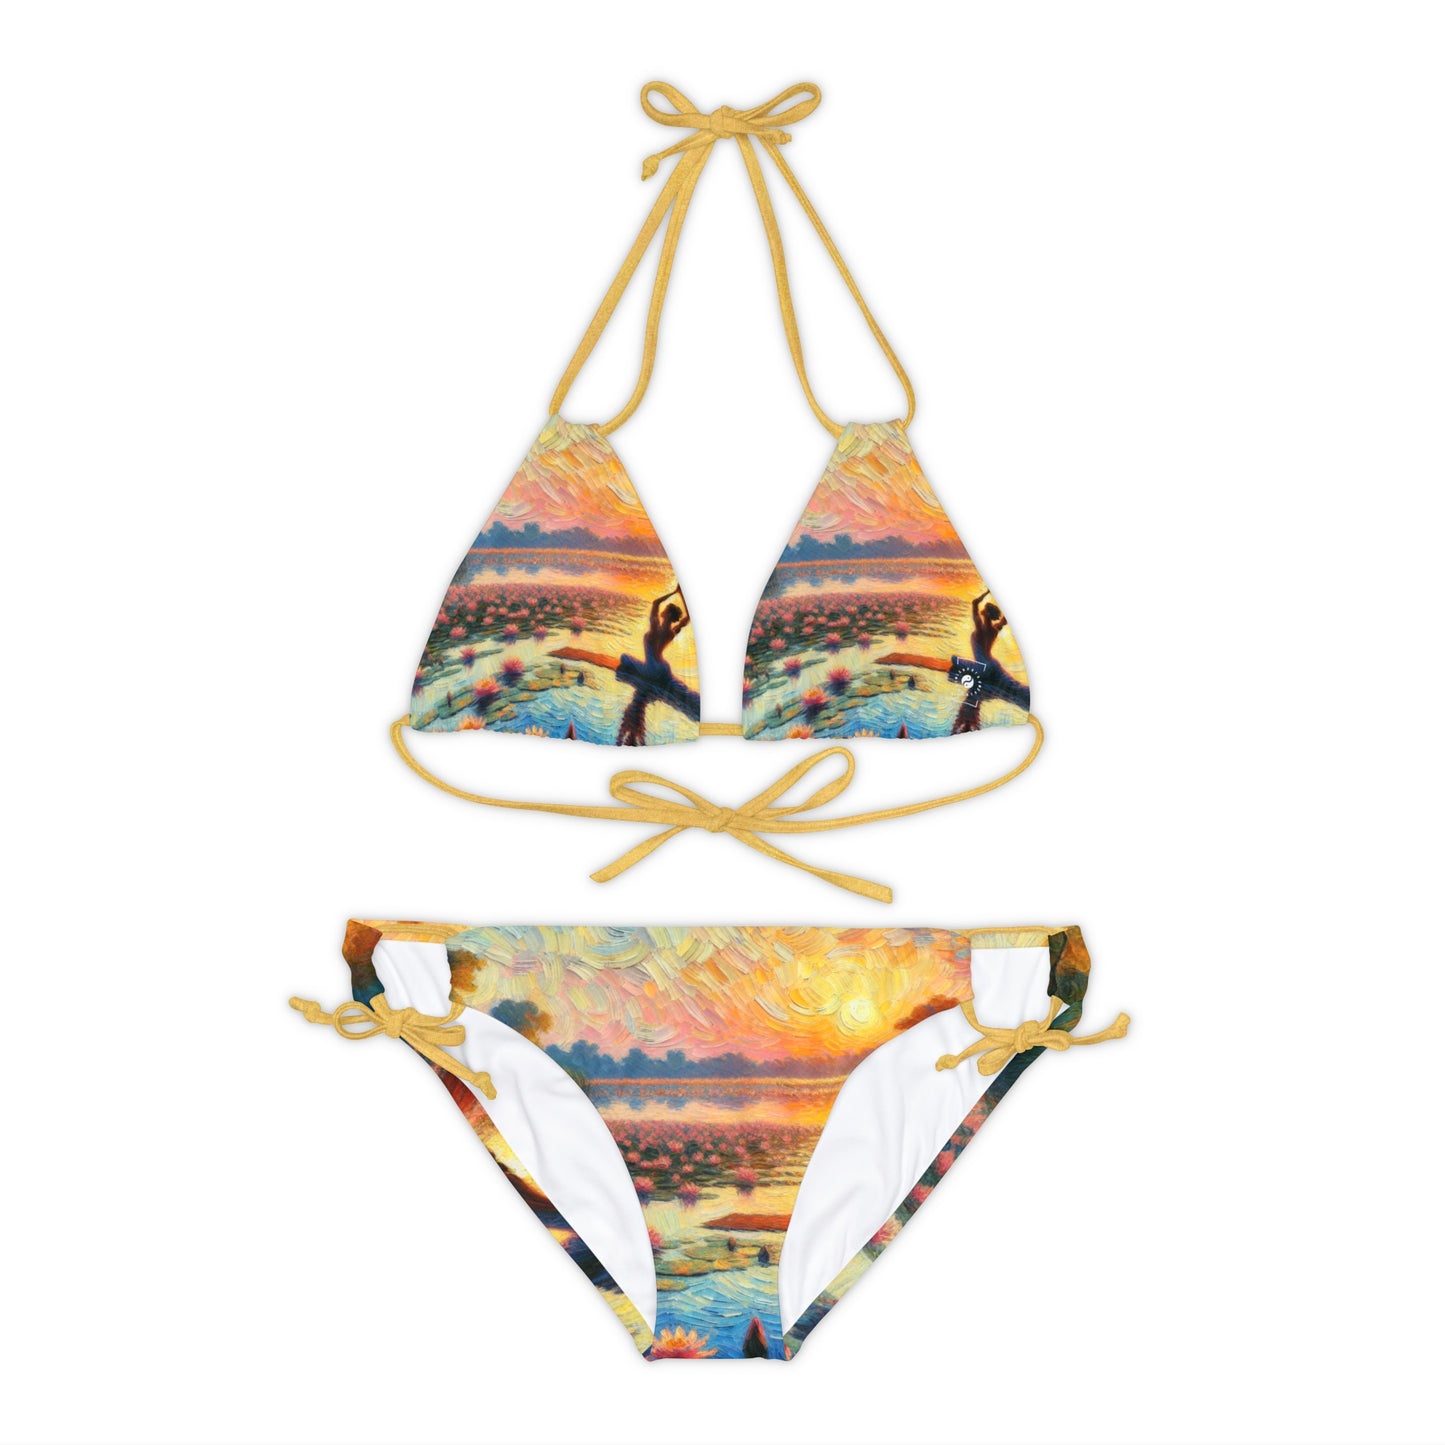 Sebastiano Del Fiore - Lace-up Bikini Set